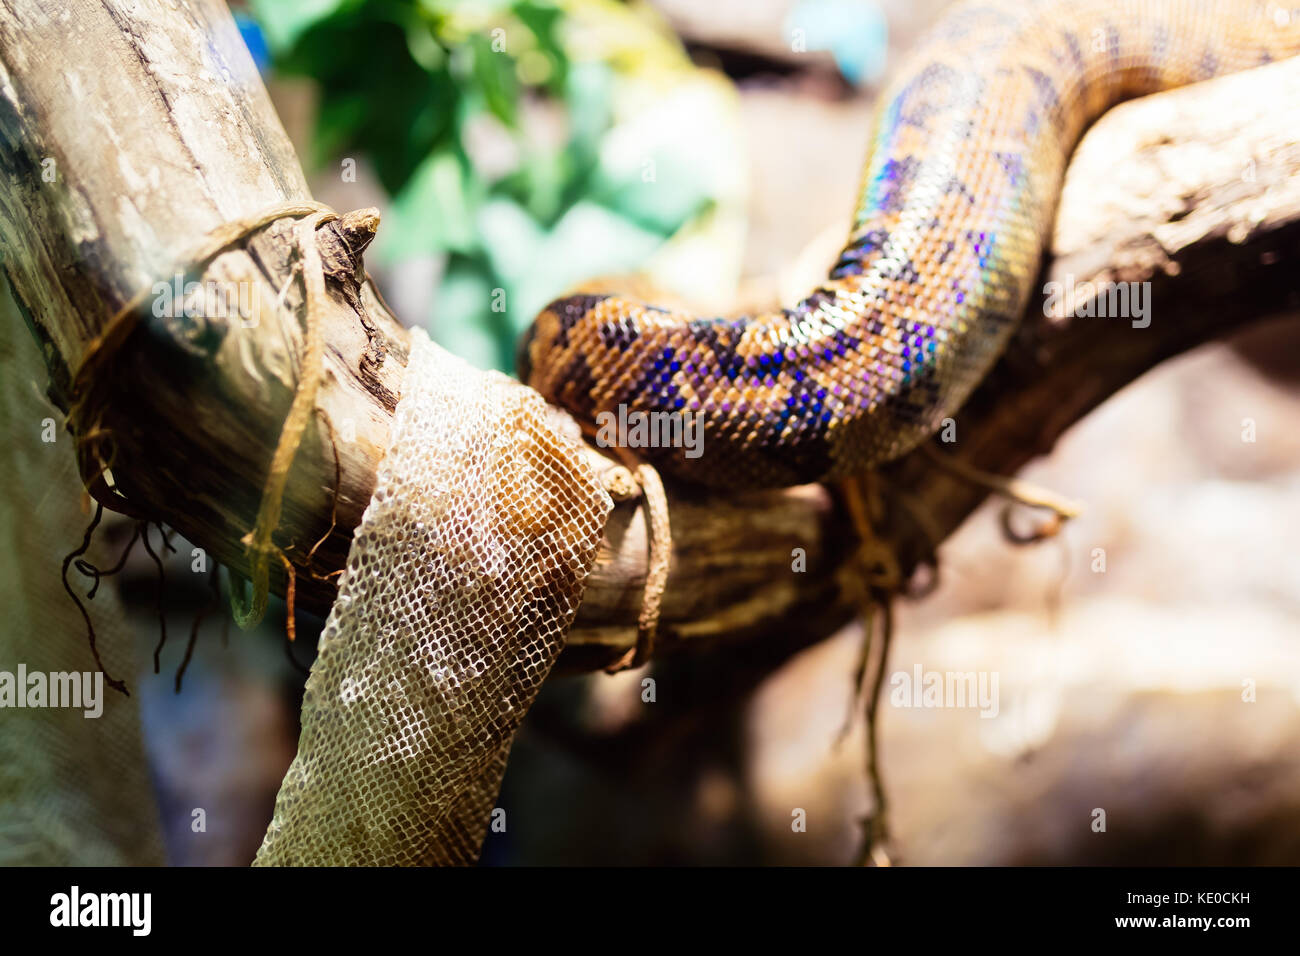 Immagine del serpente e la sua pelle shedded appeso su albero Foto Stock